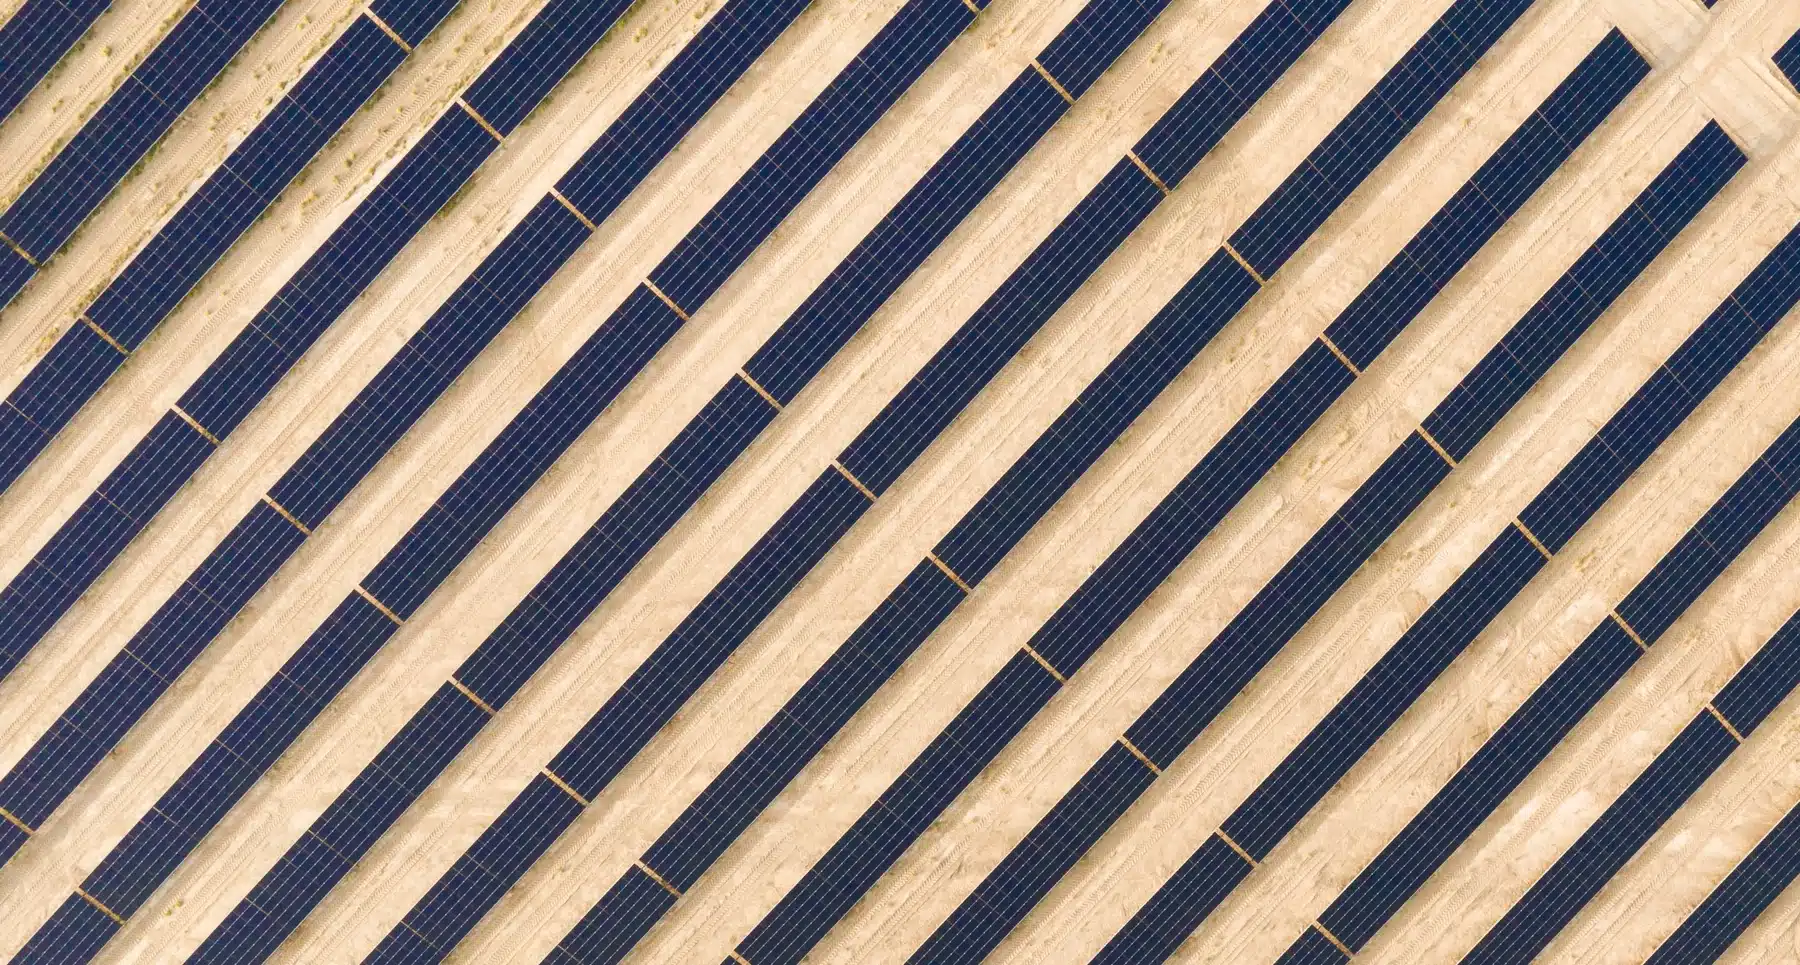 الإمارات تفتتح أكبر محطة للطاقة الشمسية في موقع واحد في العالم قبيل انعقاد مؤتمر الأمم المتحدة للمناخ